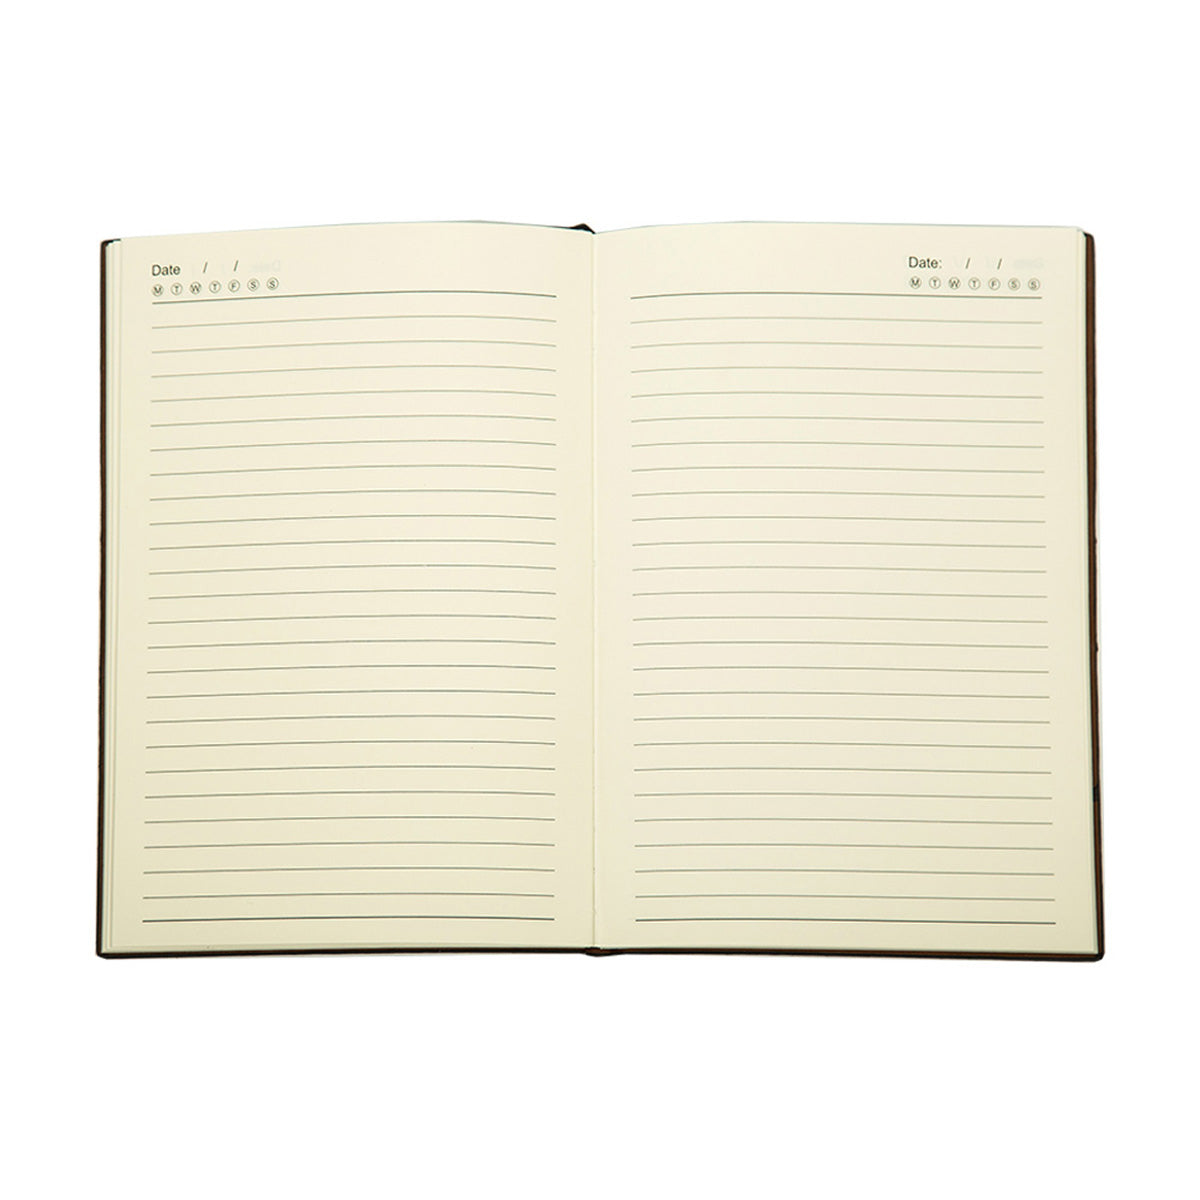 MATT A5 Journal Notebook